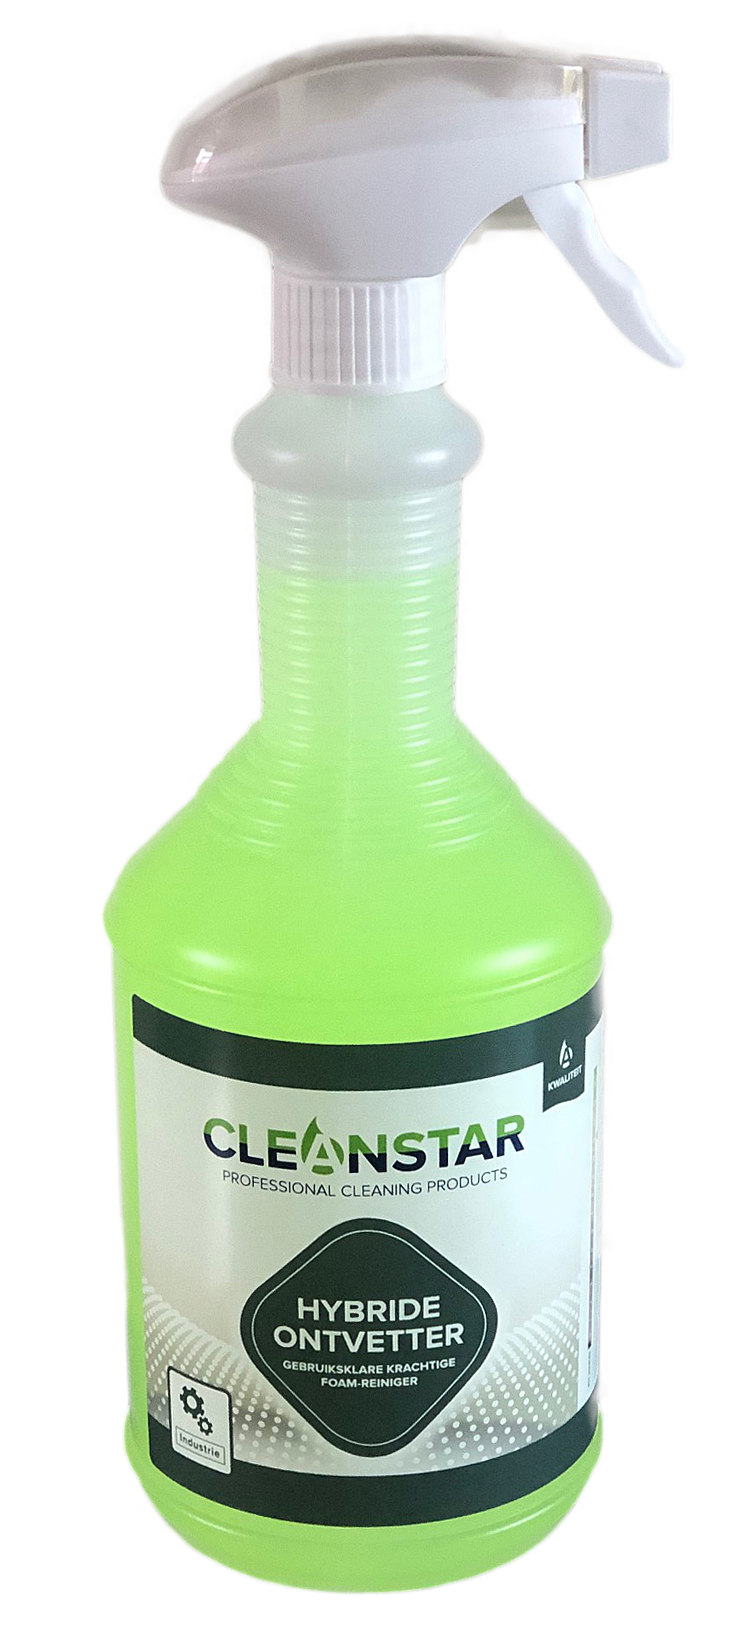 Cleanstar, Hybride Ontvetter V15, gebruiksklare reiniger 1Lt